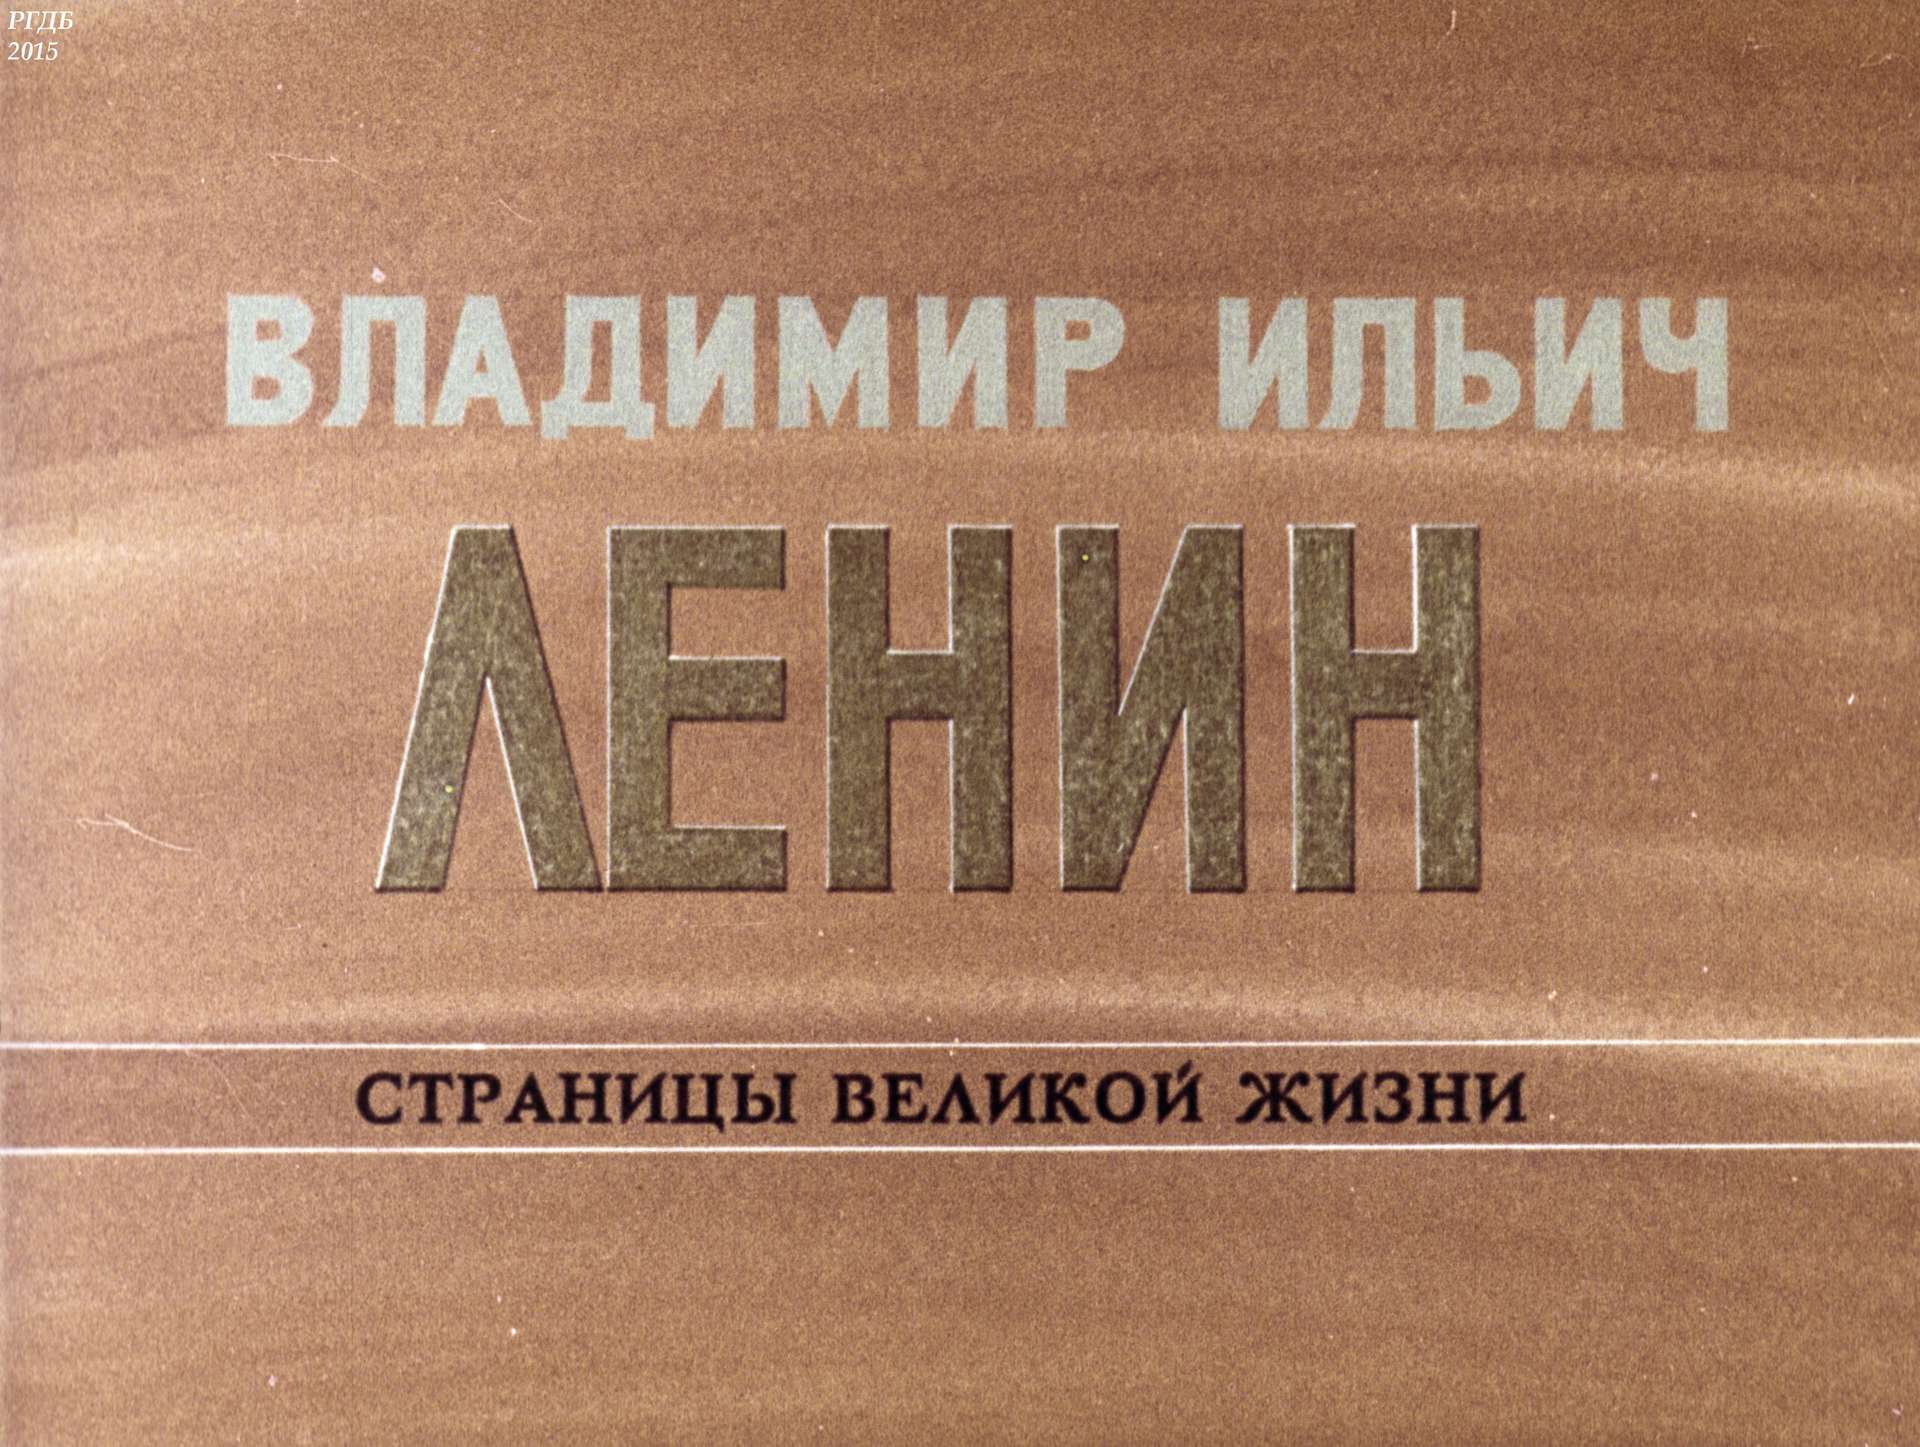 Владимир Ильич Ленин: страницы великой жизни. Ч. 6: Борьба за партию в годы реакции (1908-1910)